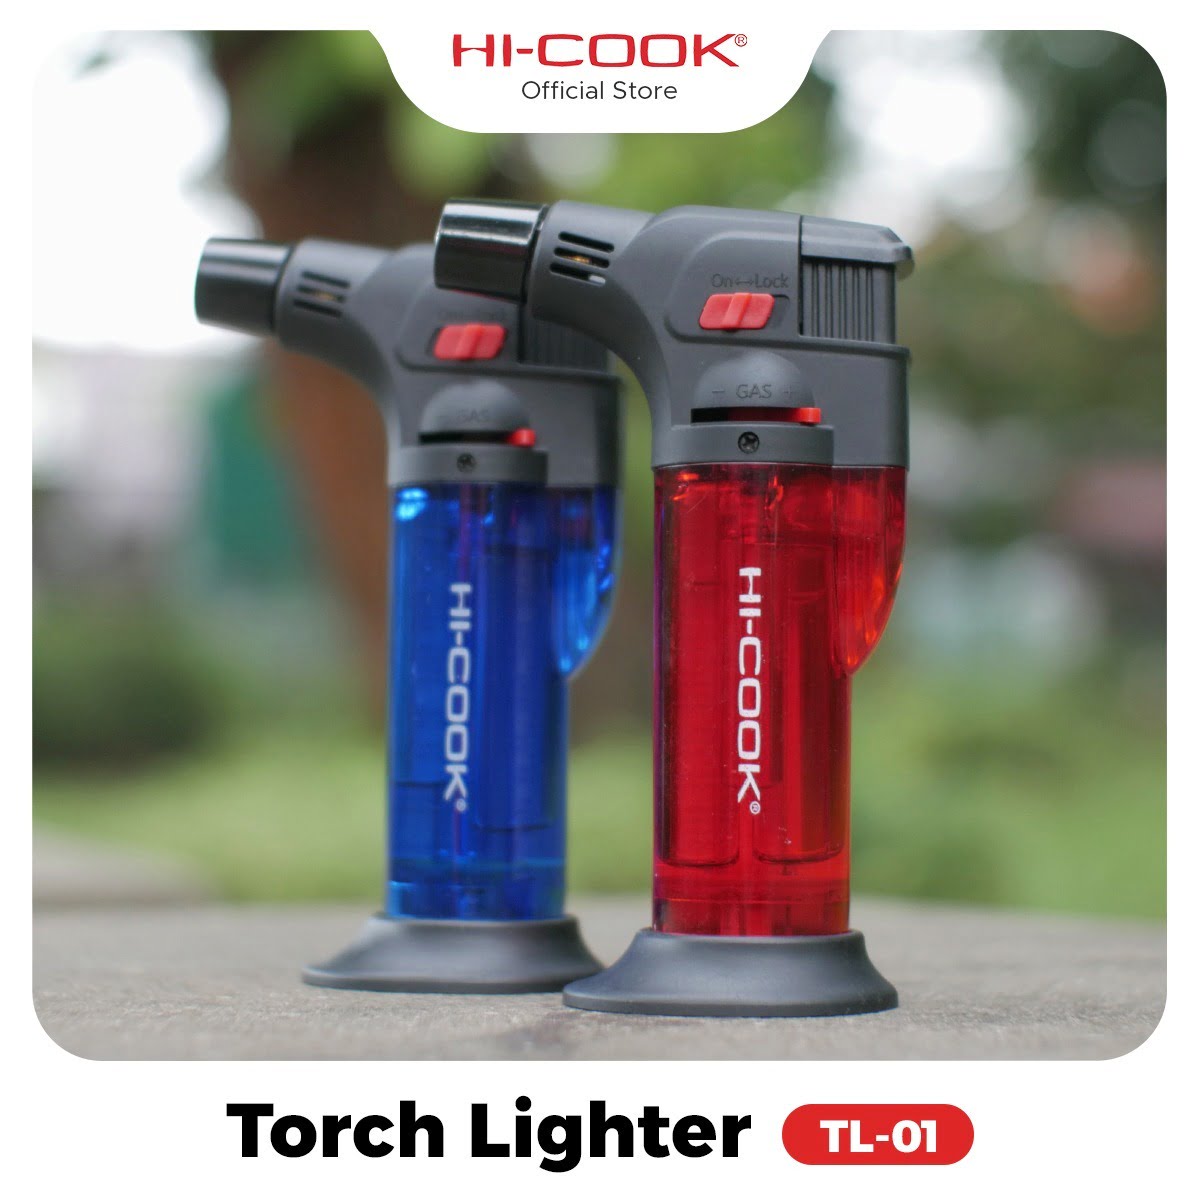 Hi-cook torch lighter tl-01 atau pemantik obor